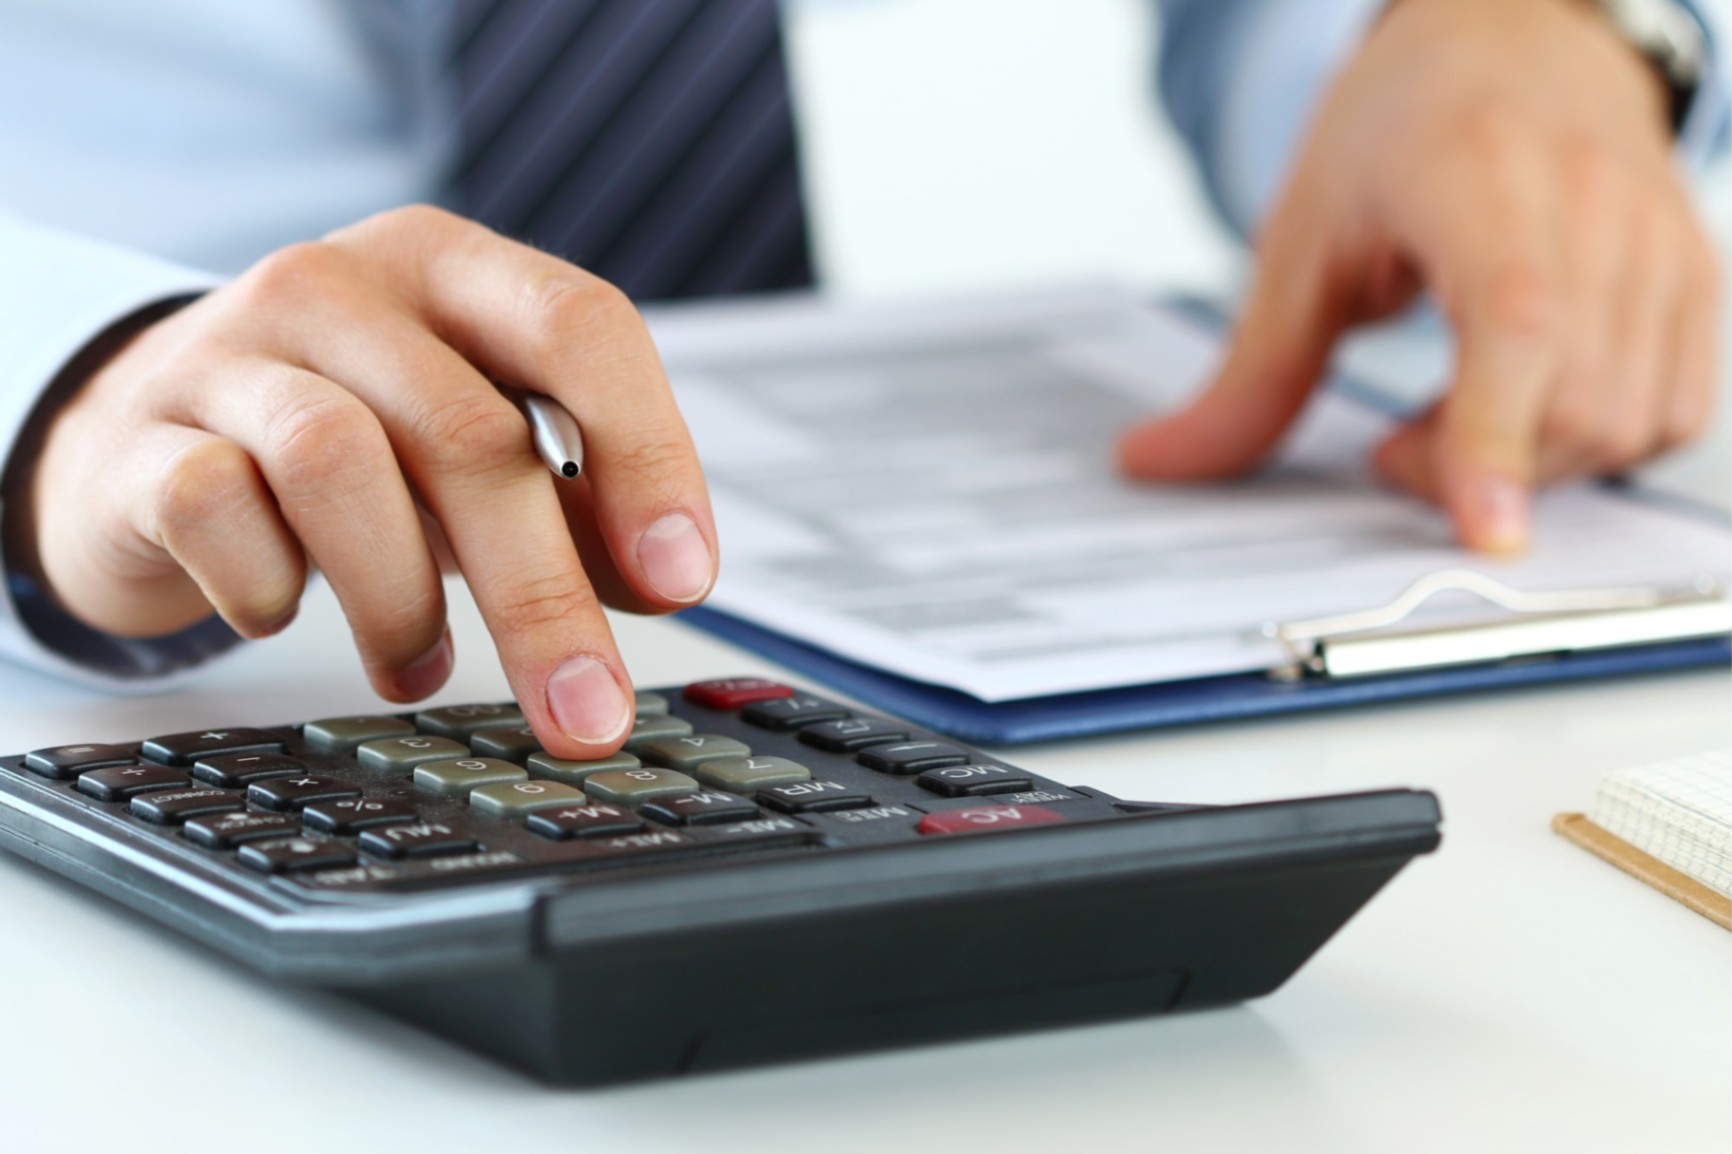 Fincredix: conozca los beneficios del préstamo personal en línea y cómo solicitarlo